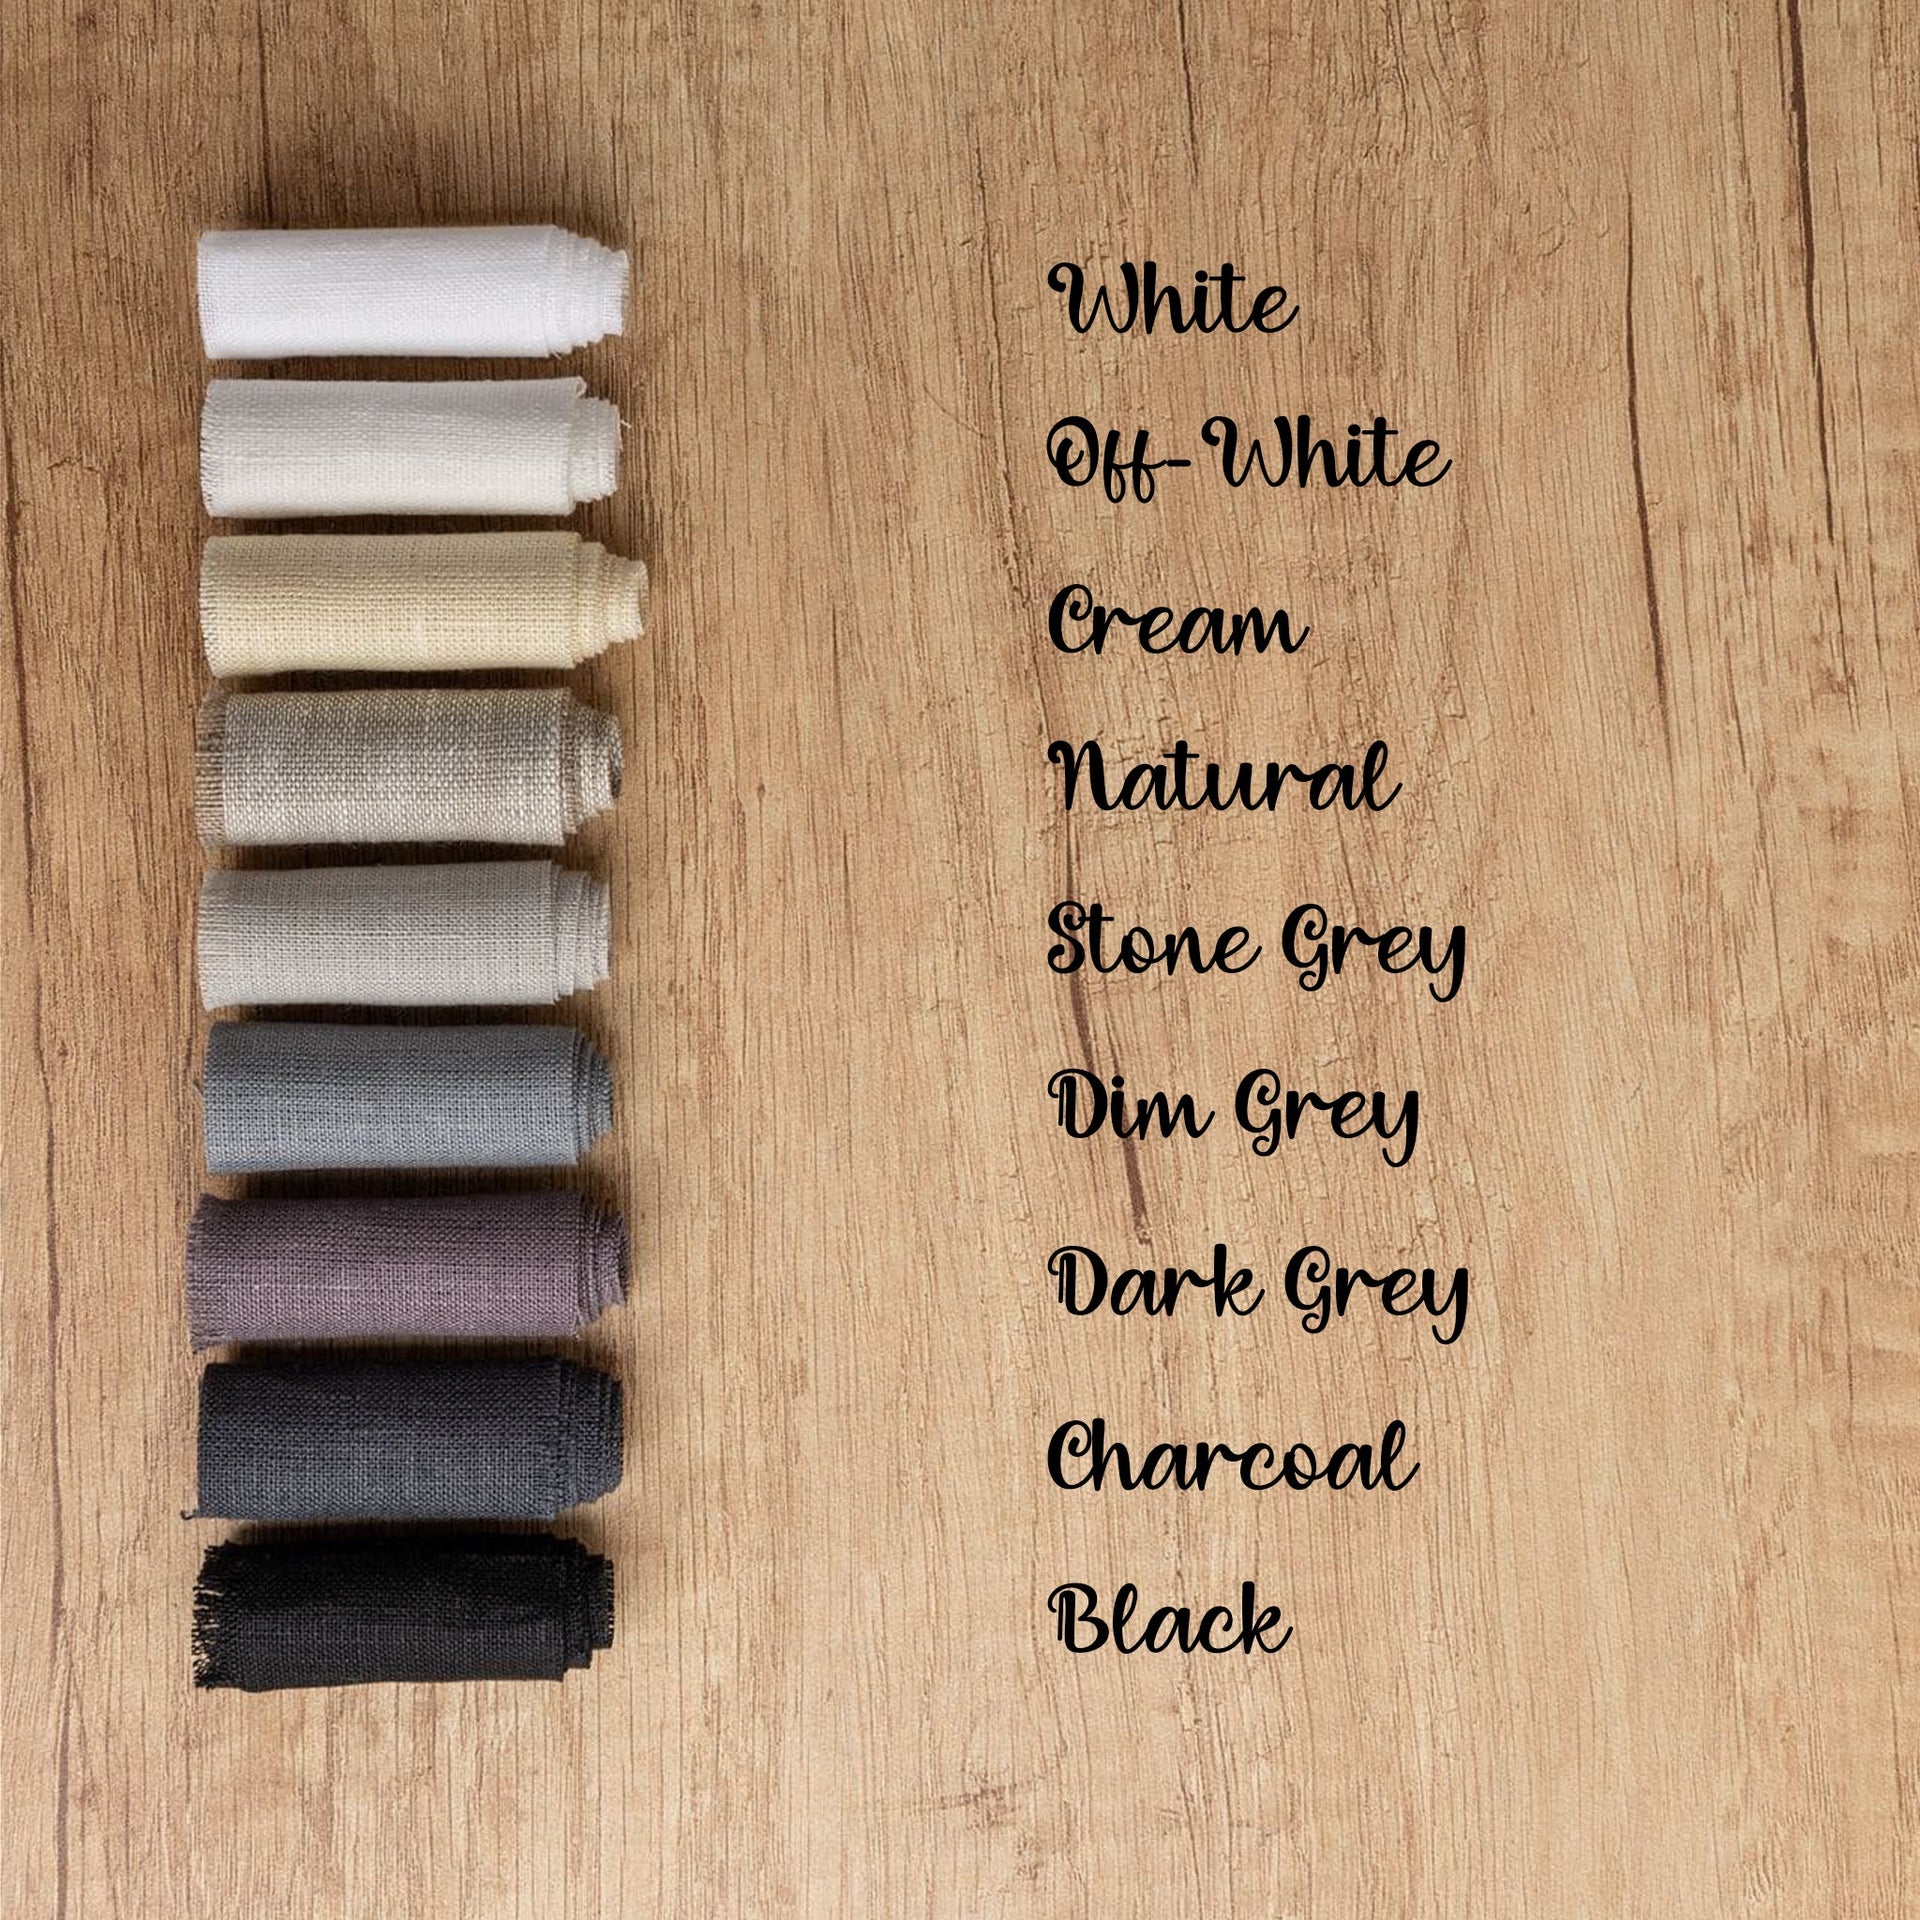 color: Cream, color: Stone Grey, color: Dim Grey, color: Dark Grey, color: Charcoal, color: Black